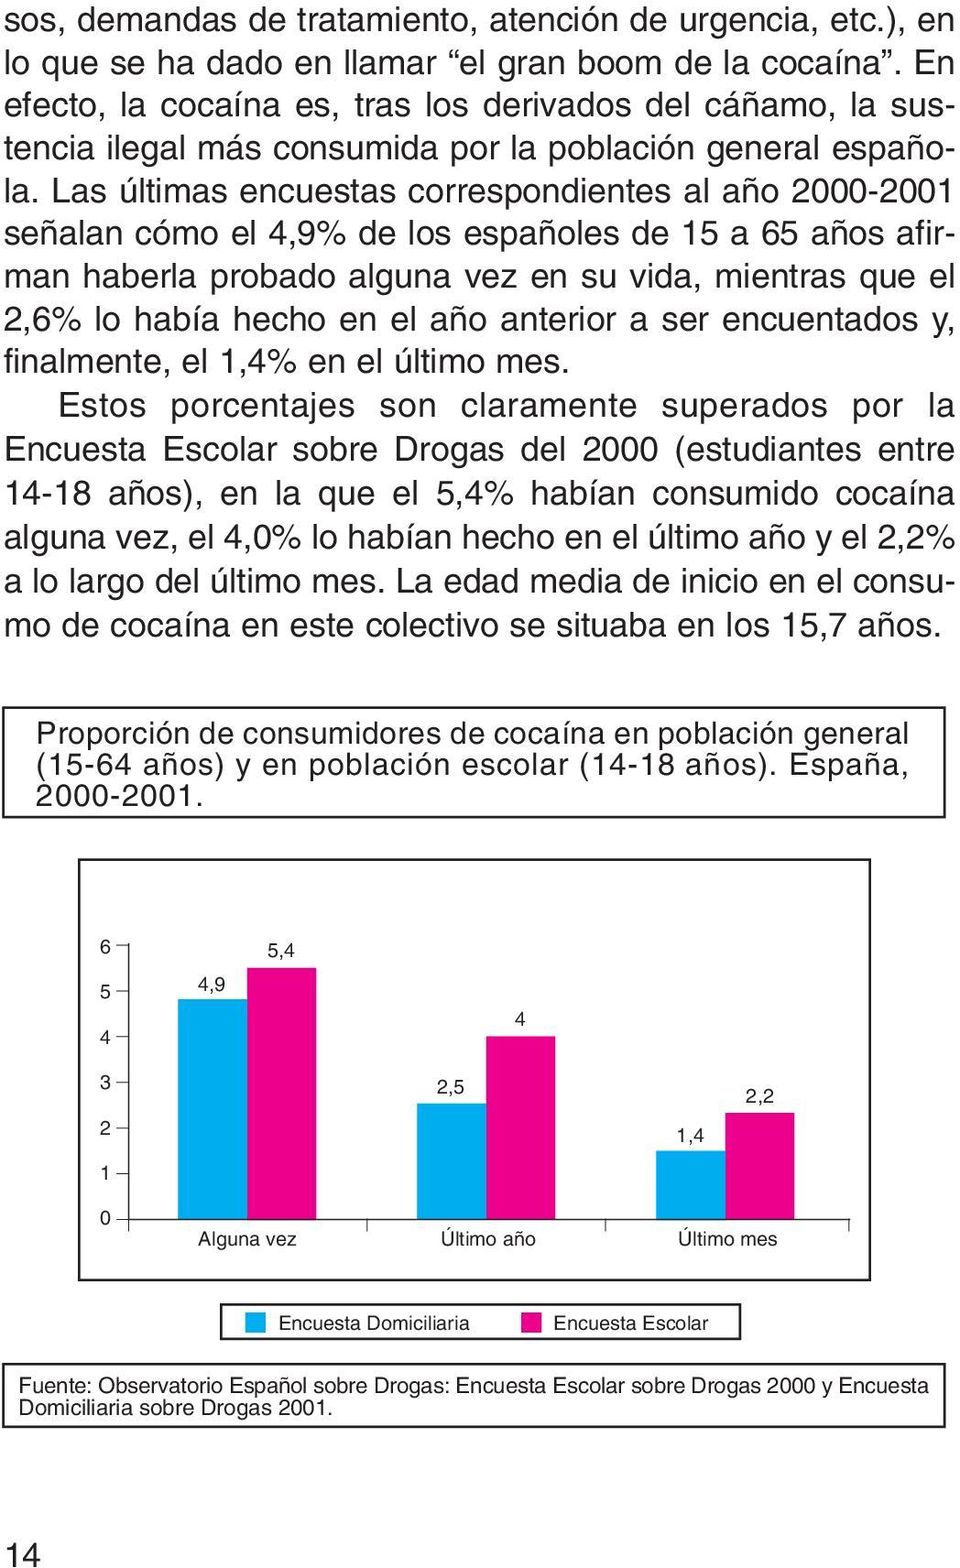 Las últimas encuestas correspondientes al año 2000-2001 señalan cómo el 4,9% de los españoles de 15 a 65 años afirman haberla probado alguna vez en su vida, mientras que el 2,6% lo había hecho en el